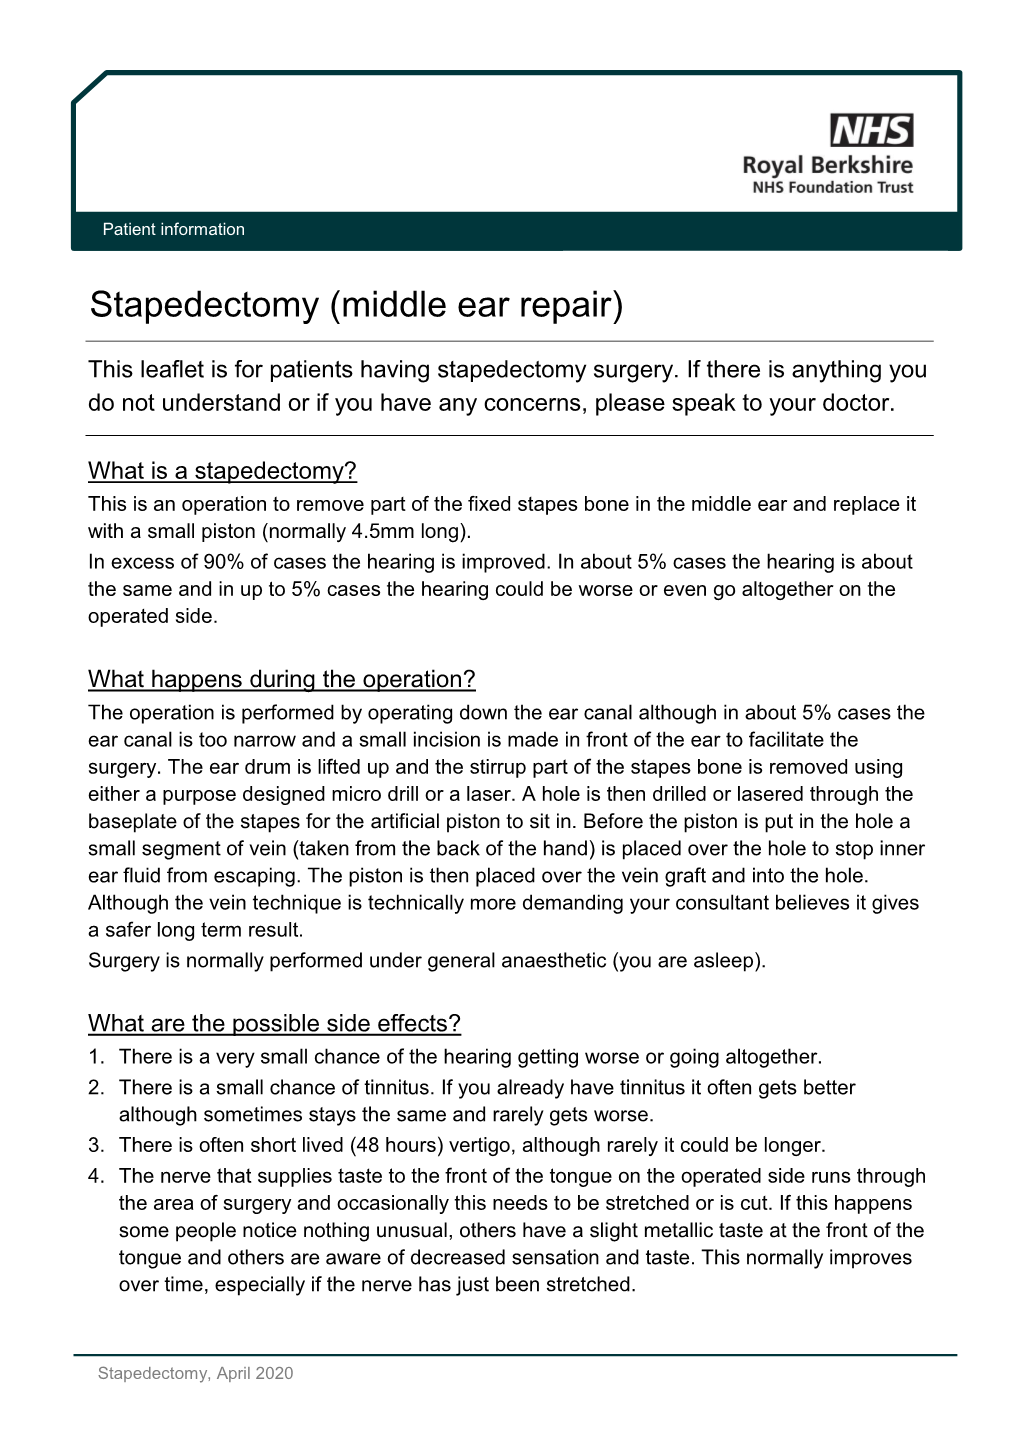 Stapedectomy (Middle Ear Repair)